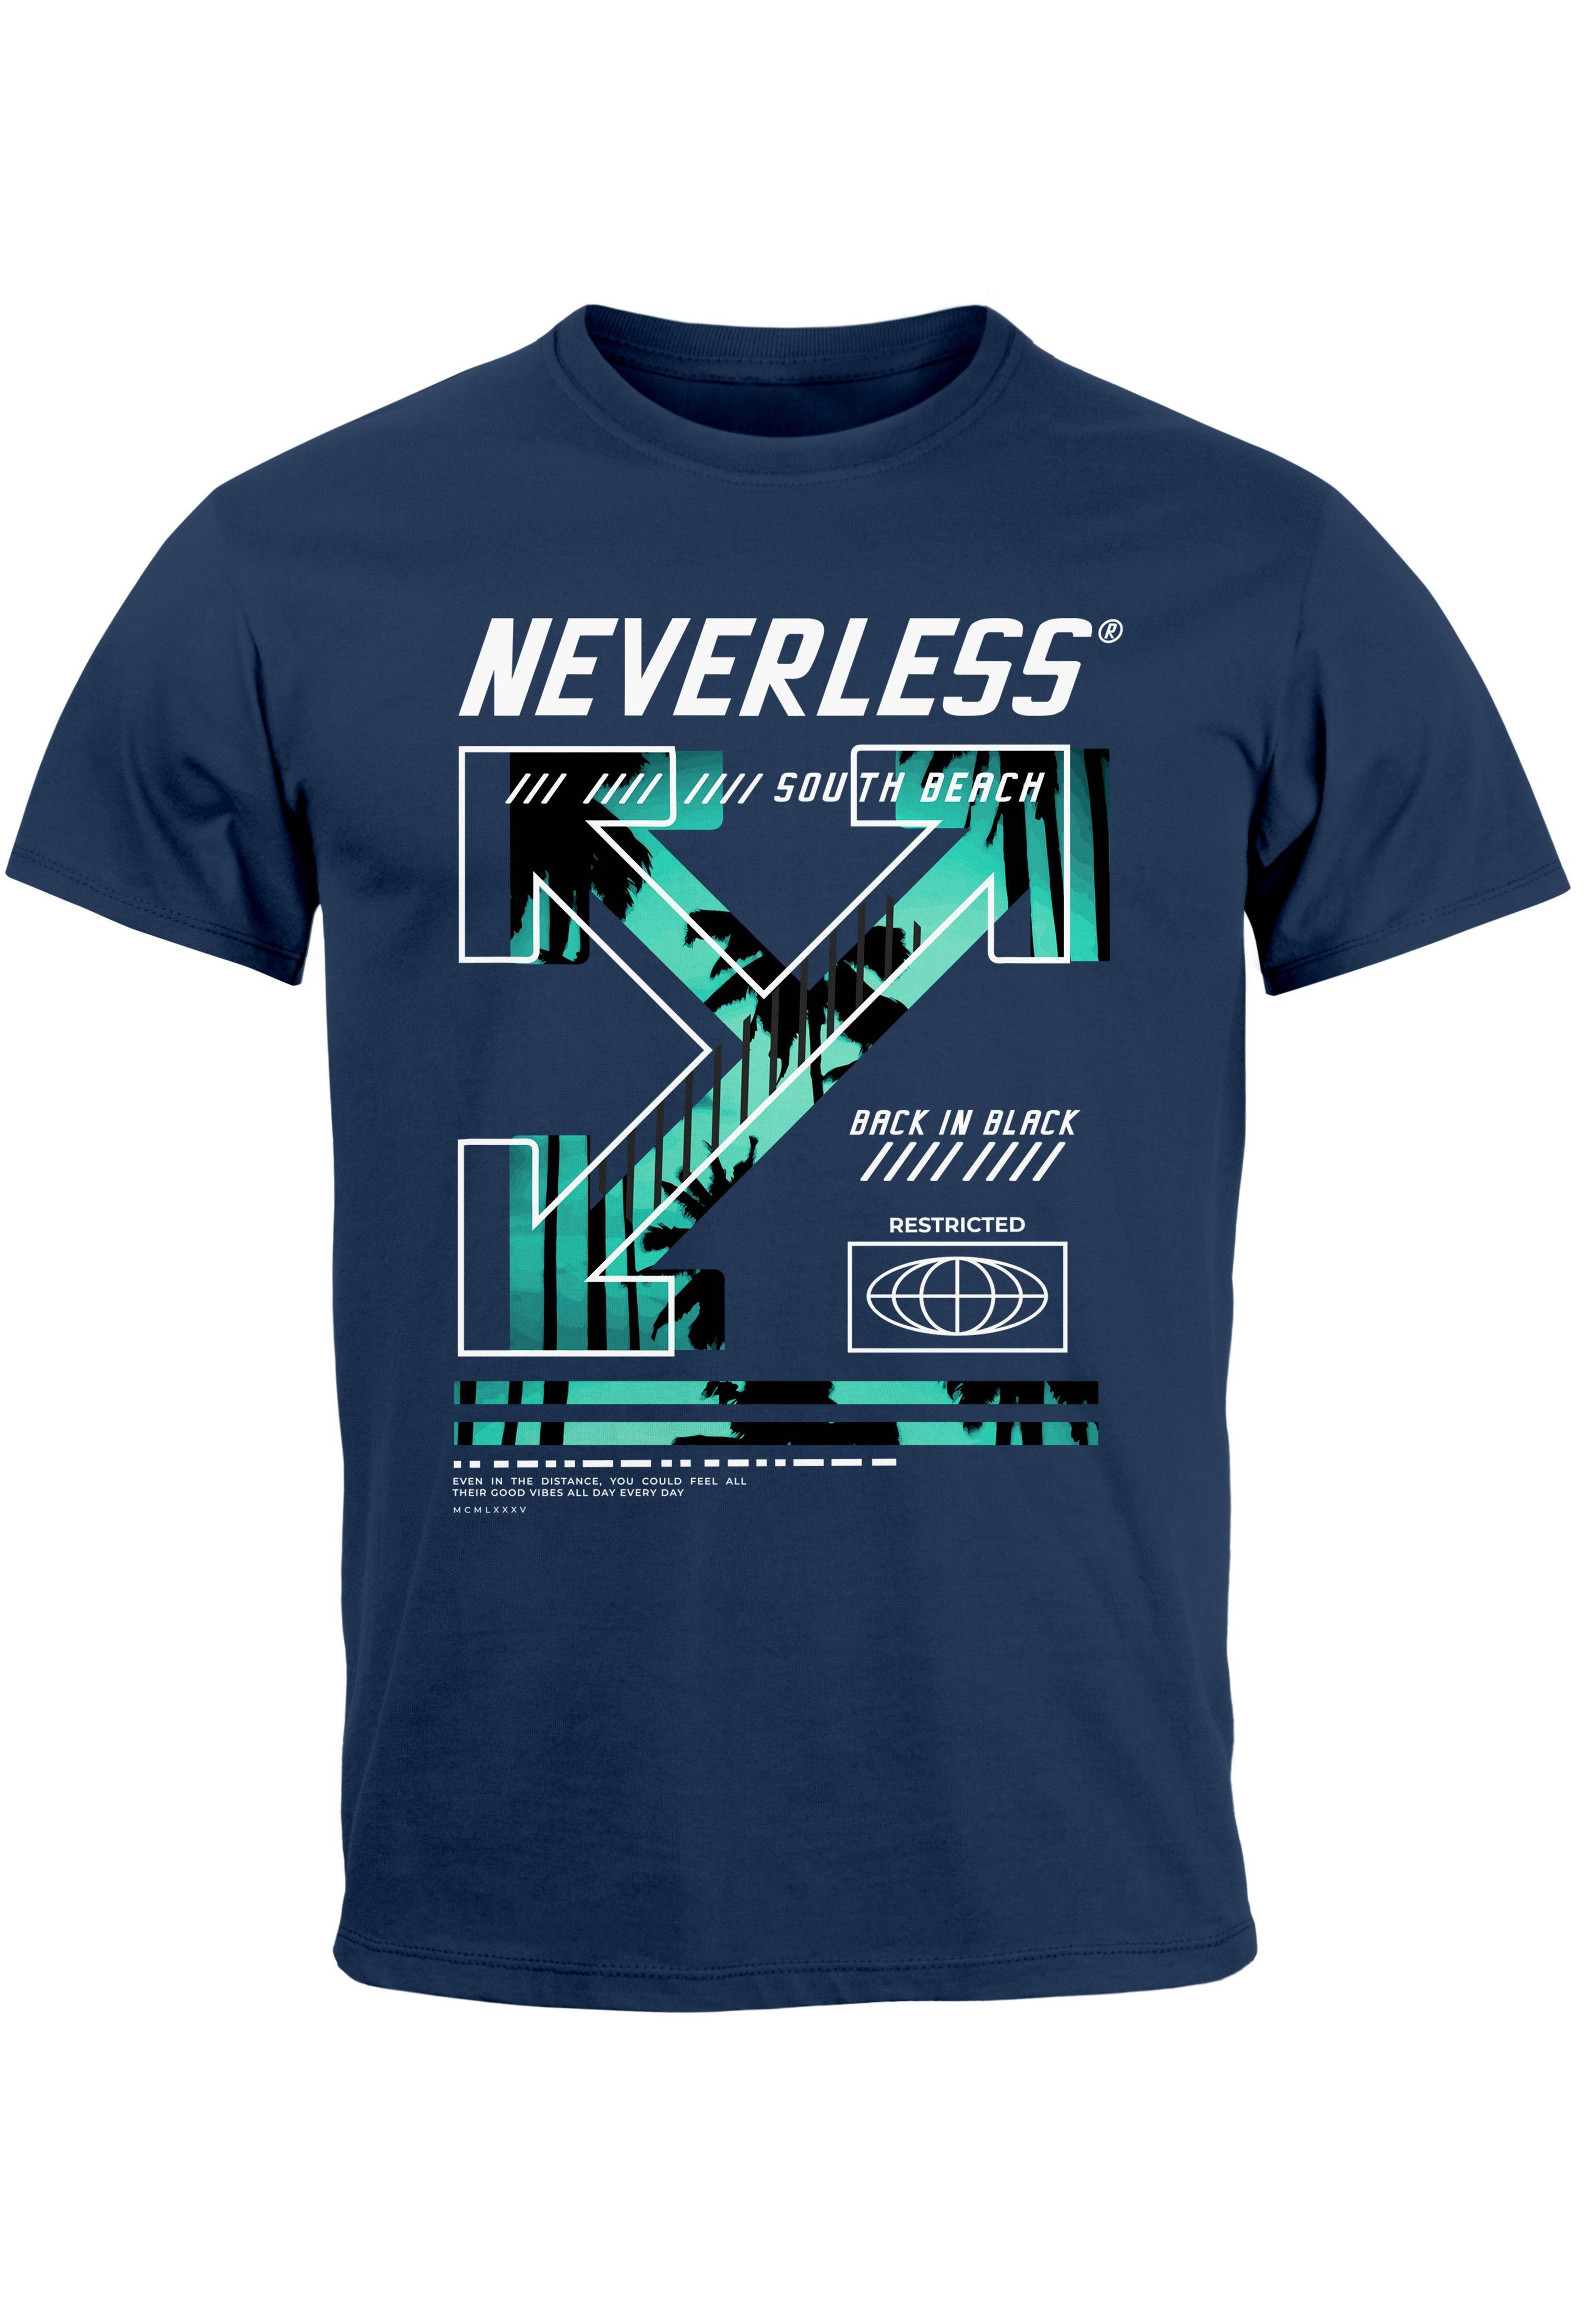 Neverless Print-Shirt Herren T-Shirt Text Print Aufdruck South Beach Techwear Fashion Street mit Print navy